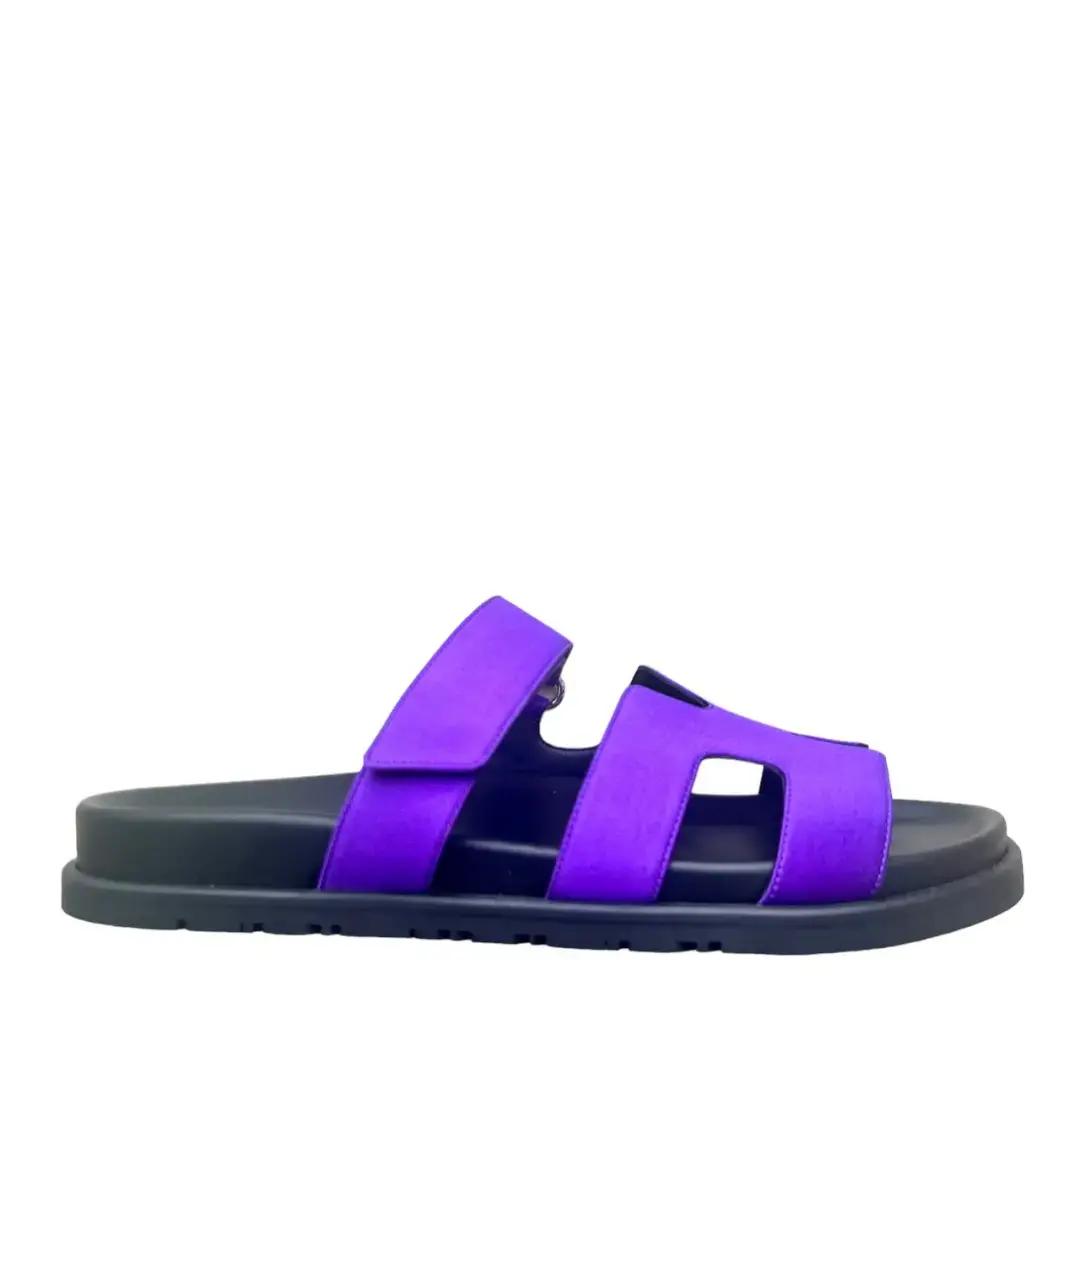 HERMES PRE-OWNED Фиолетовые текстильные сандалии, фото 1